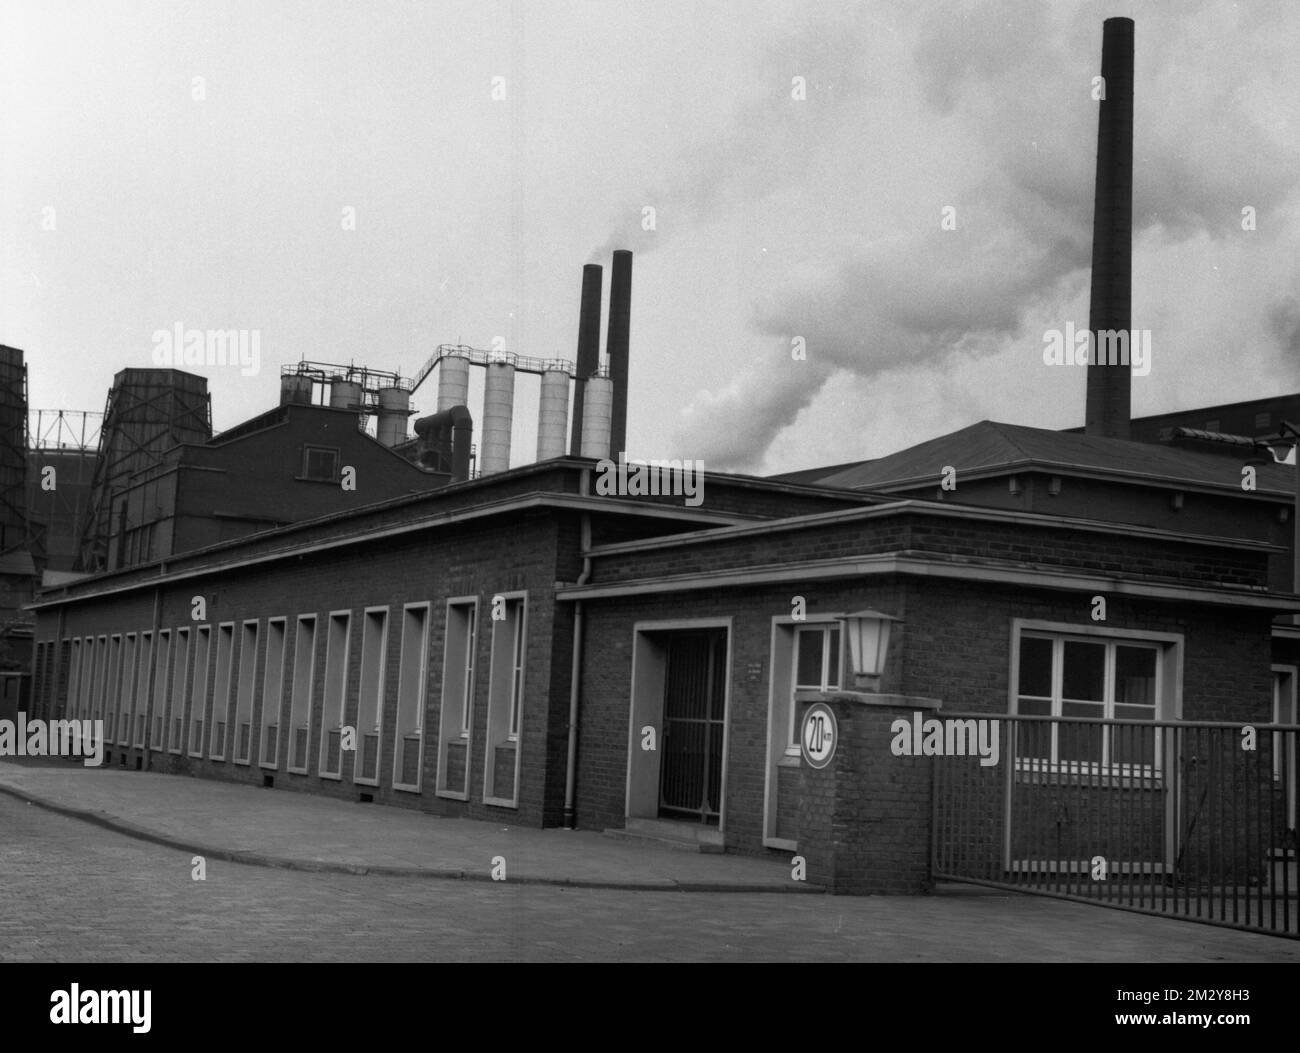 Vivere, alloggiare e svago nelle vicinanze di miniere, fabbriche e binari ferroviari, come qui ad Altenboege-Boenen nel 1968, non è una situazione ideale Foto Stock